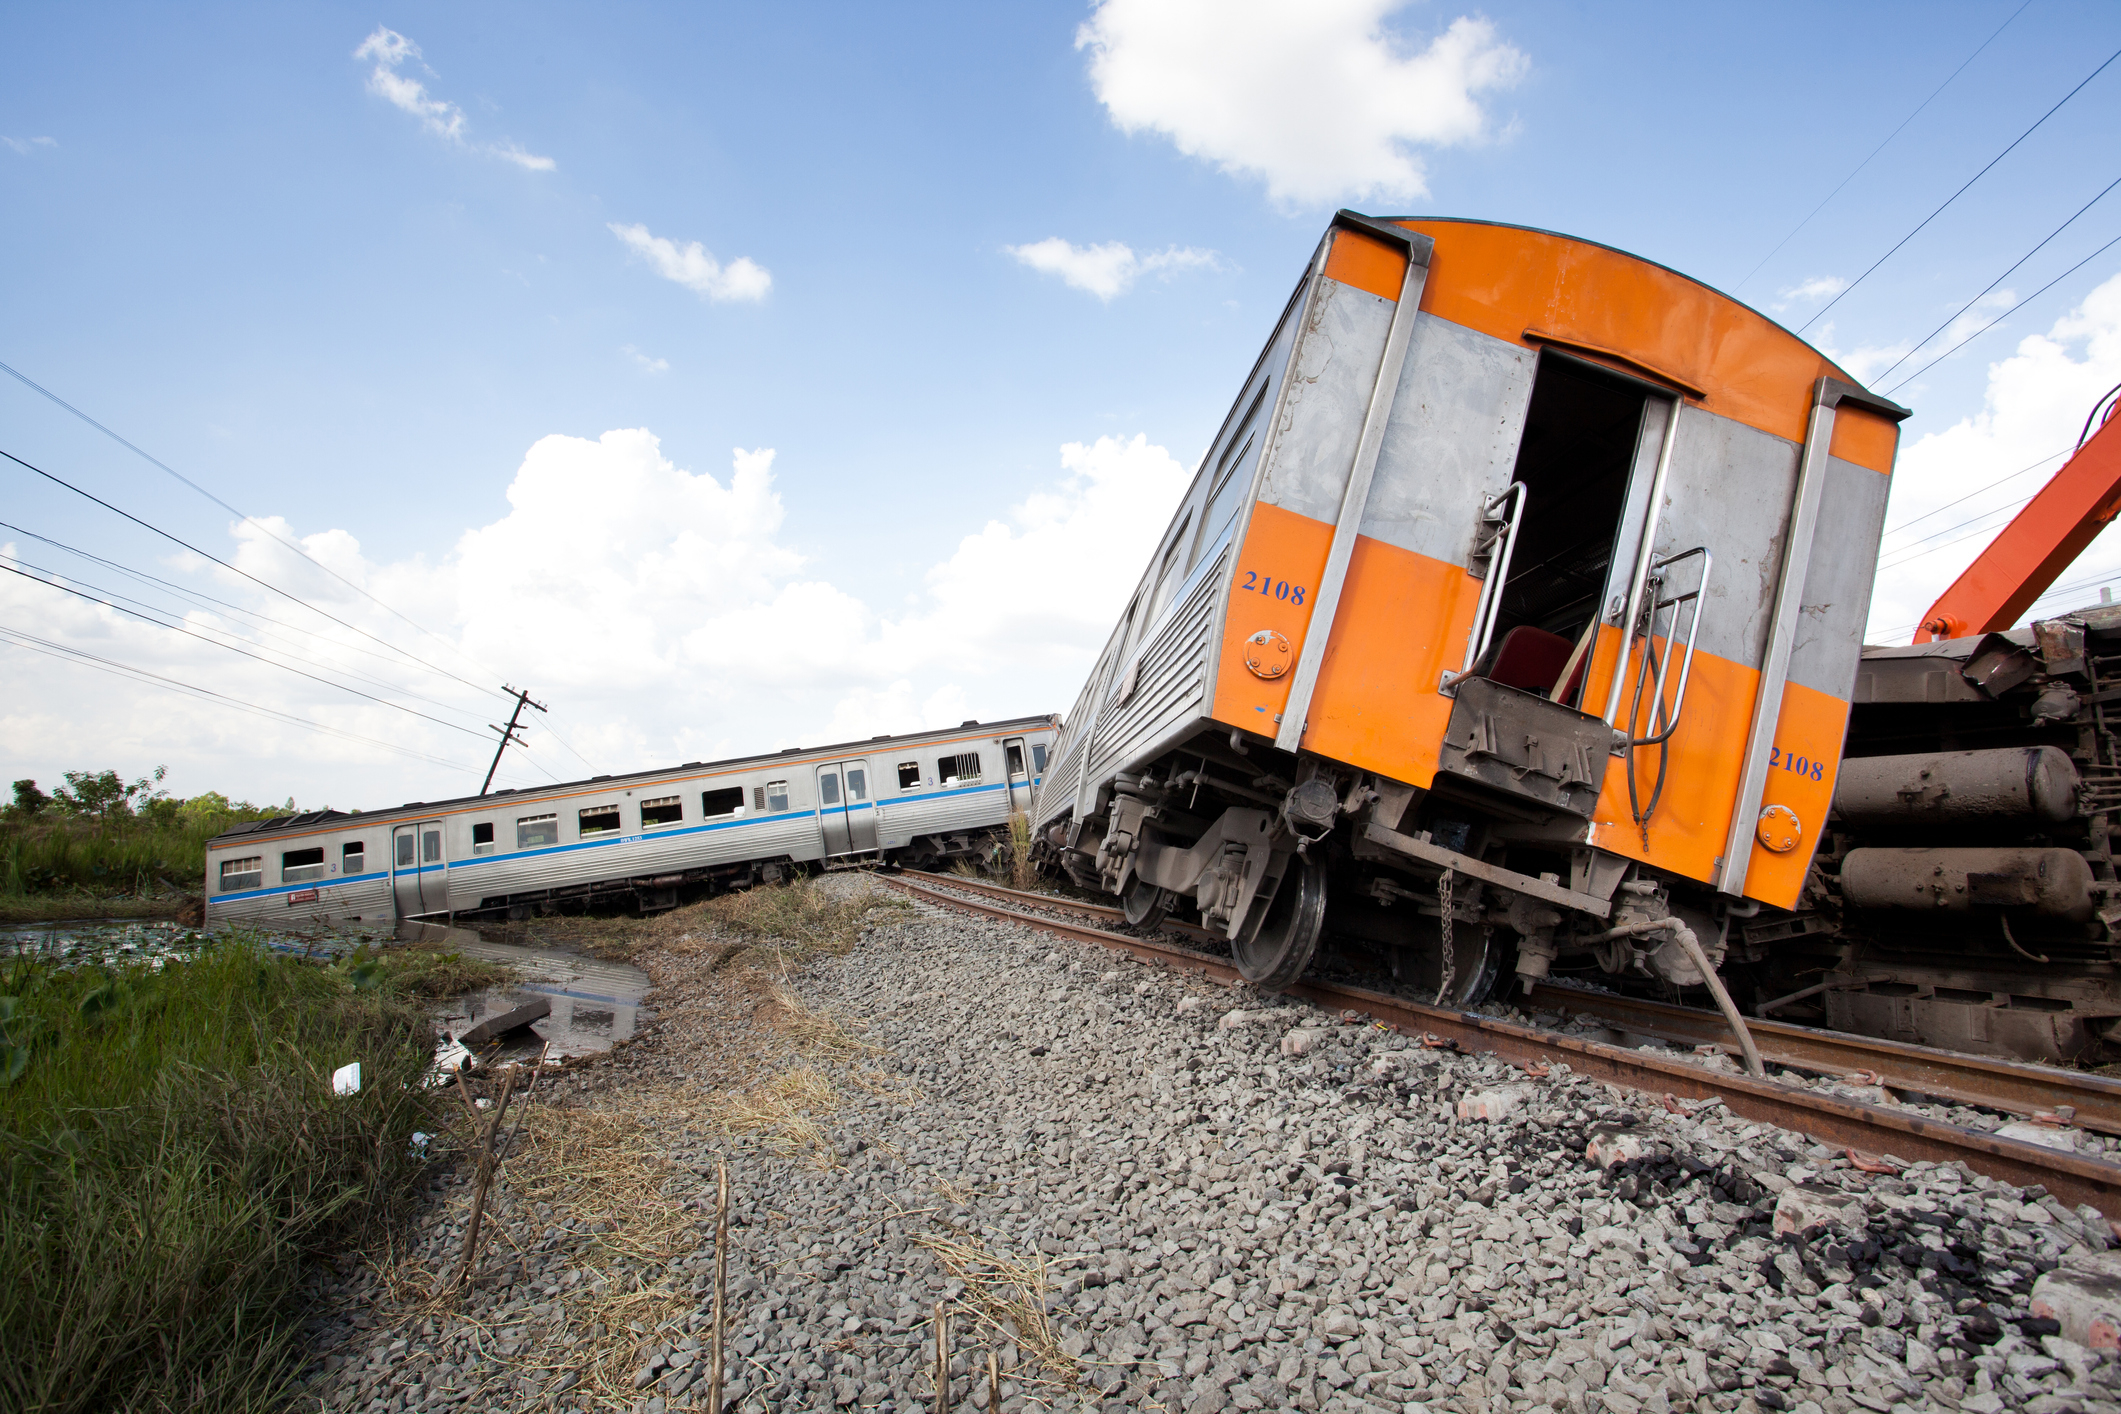 A derailed train